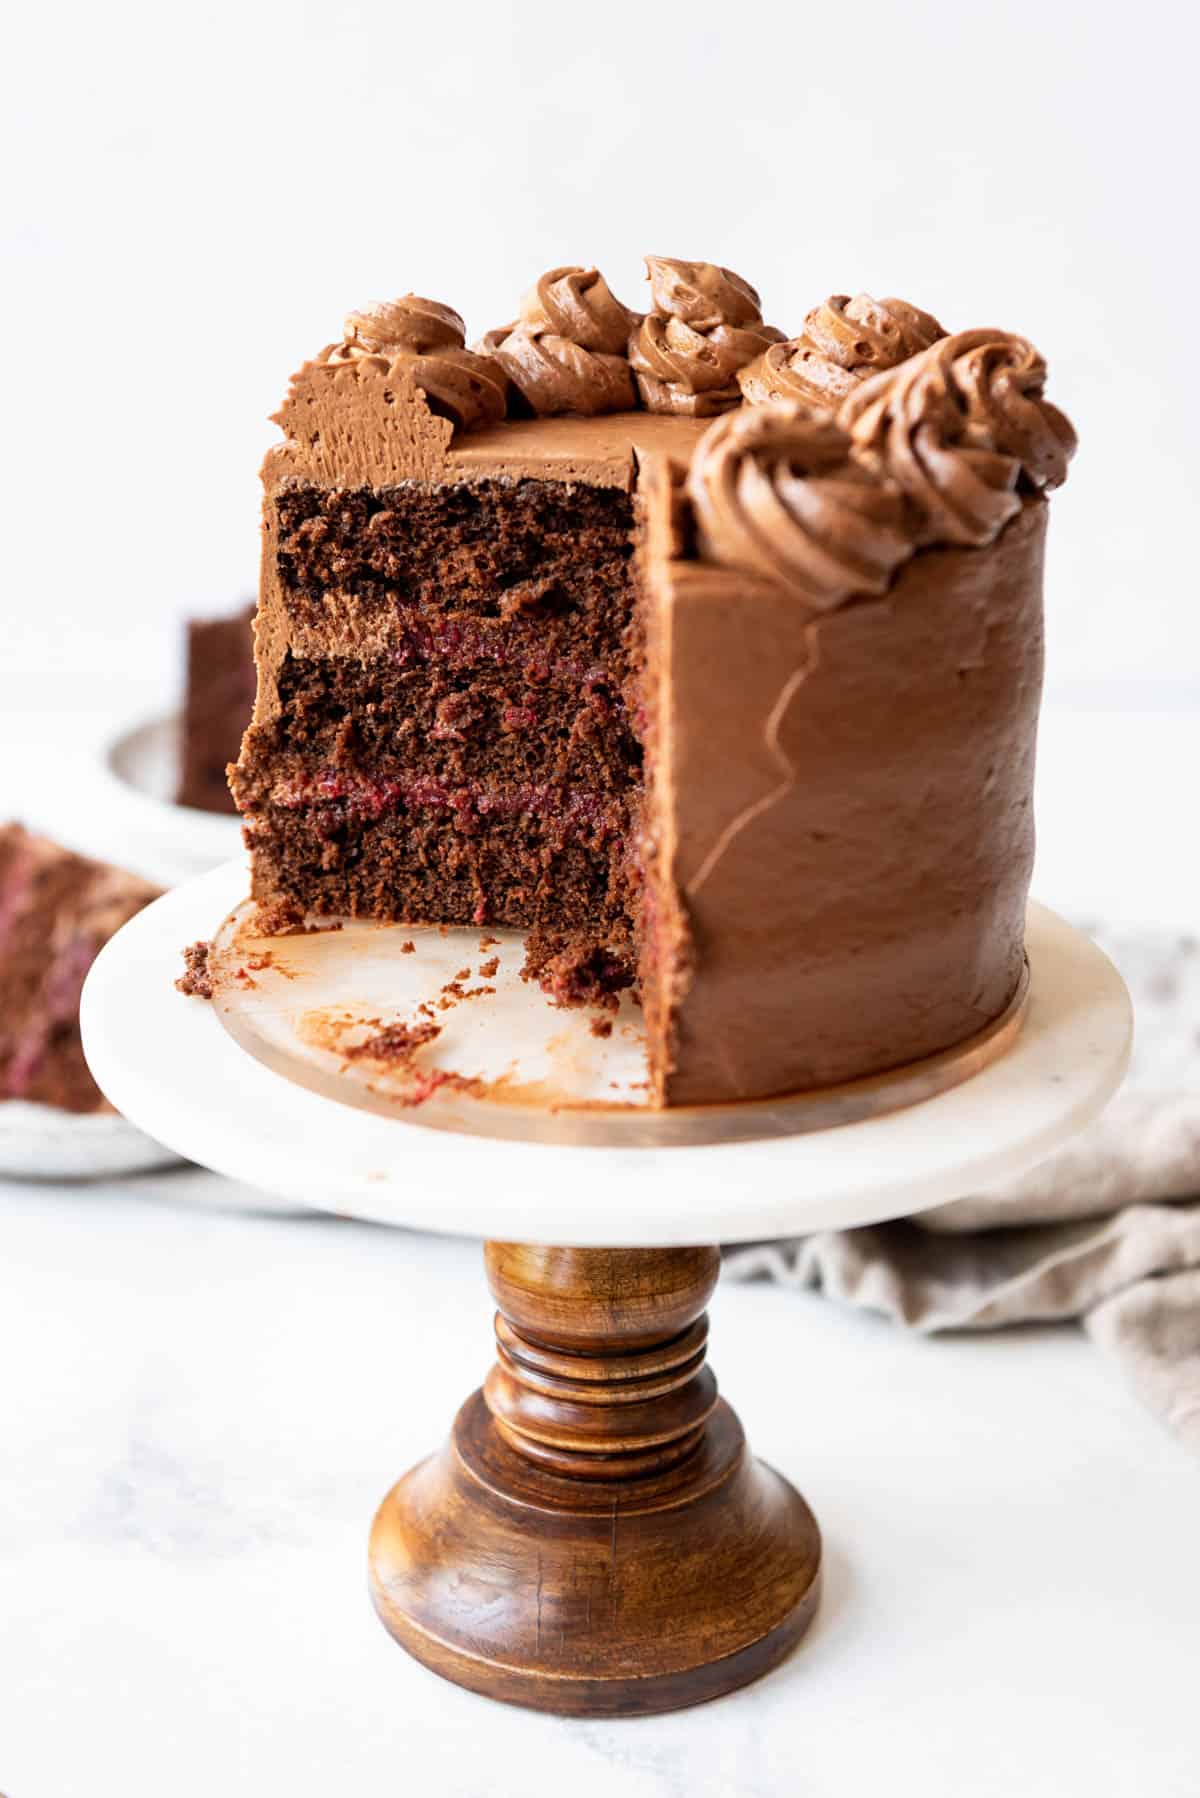 A sliced chocolate raspberry cake on a cake stand.